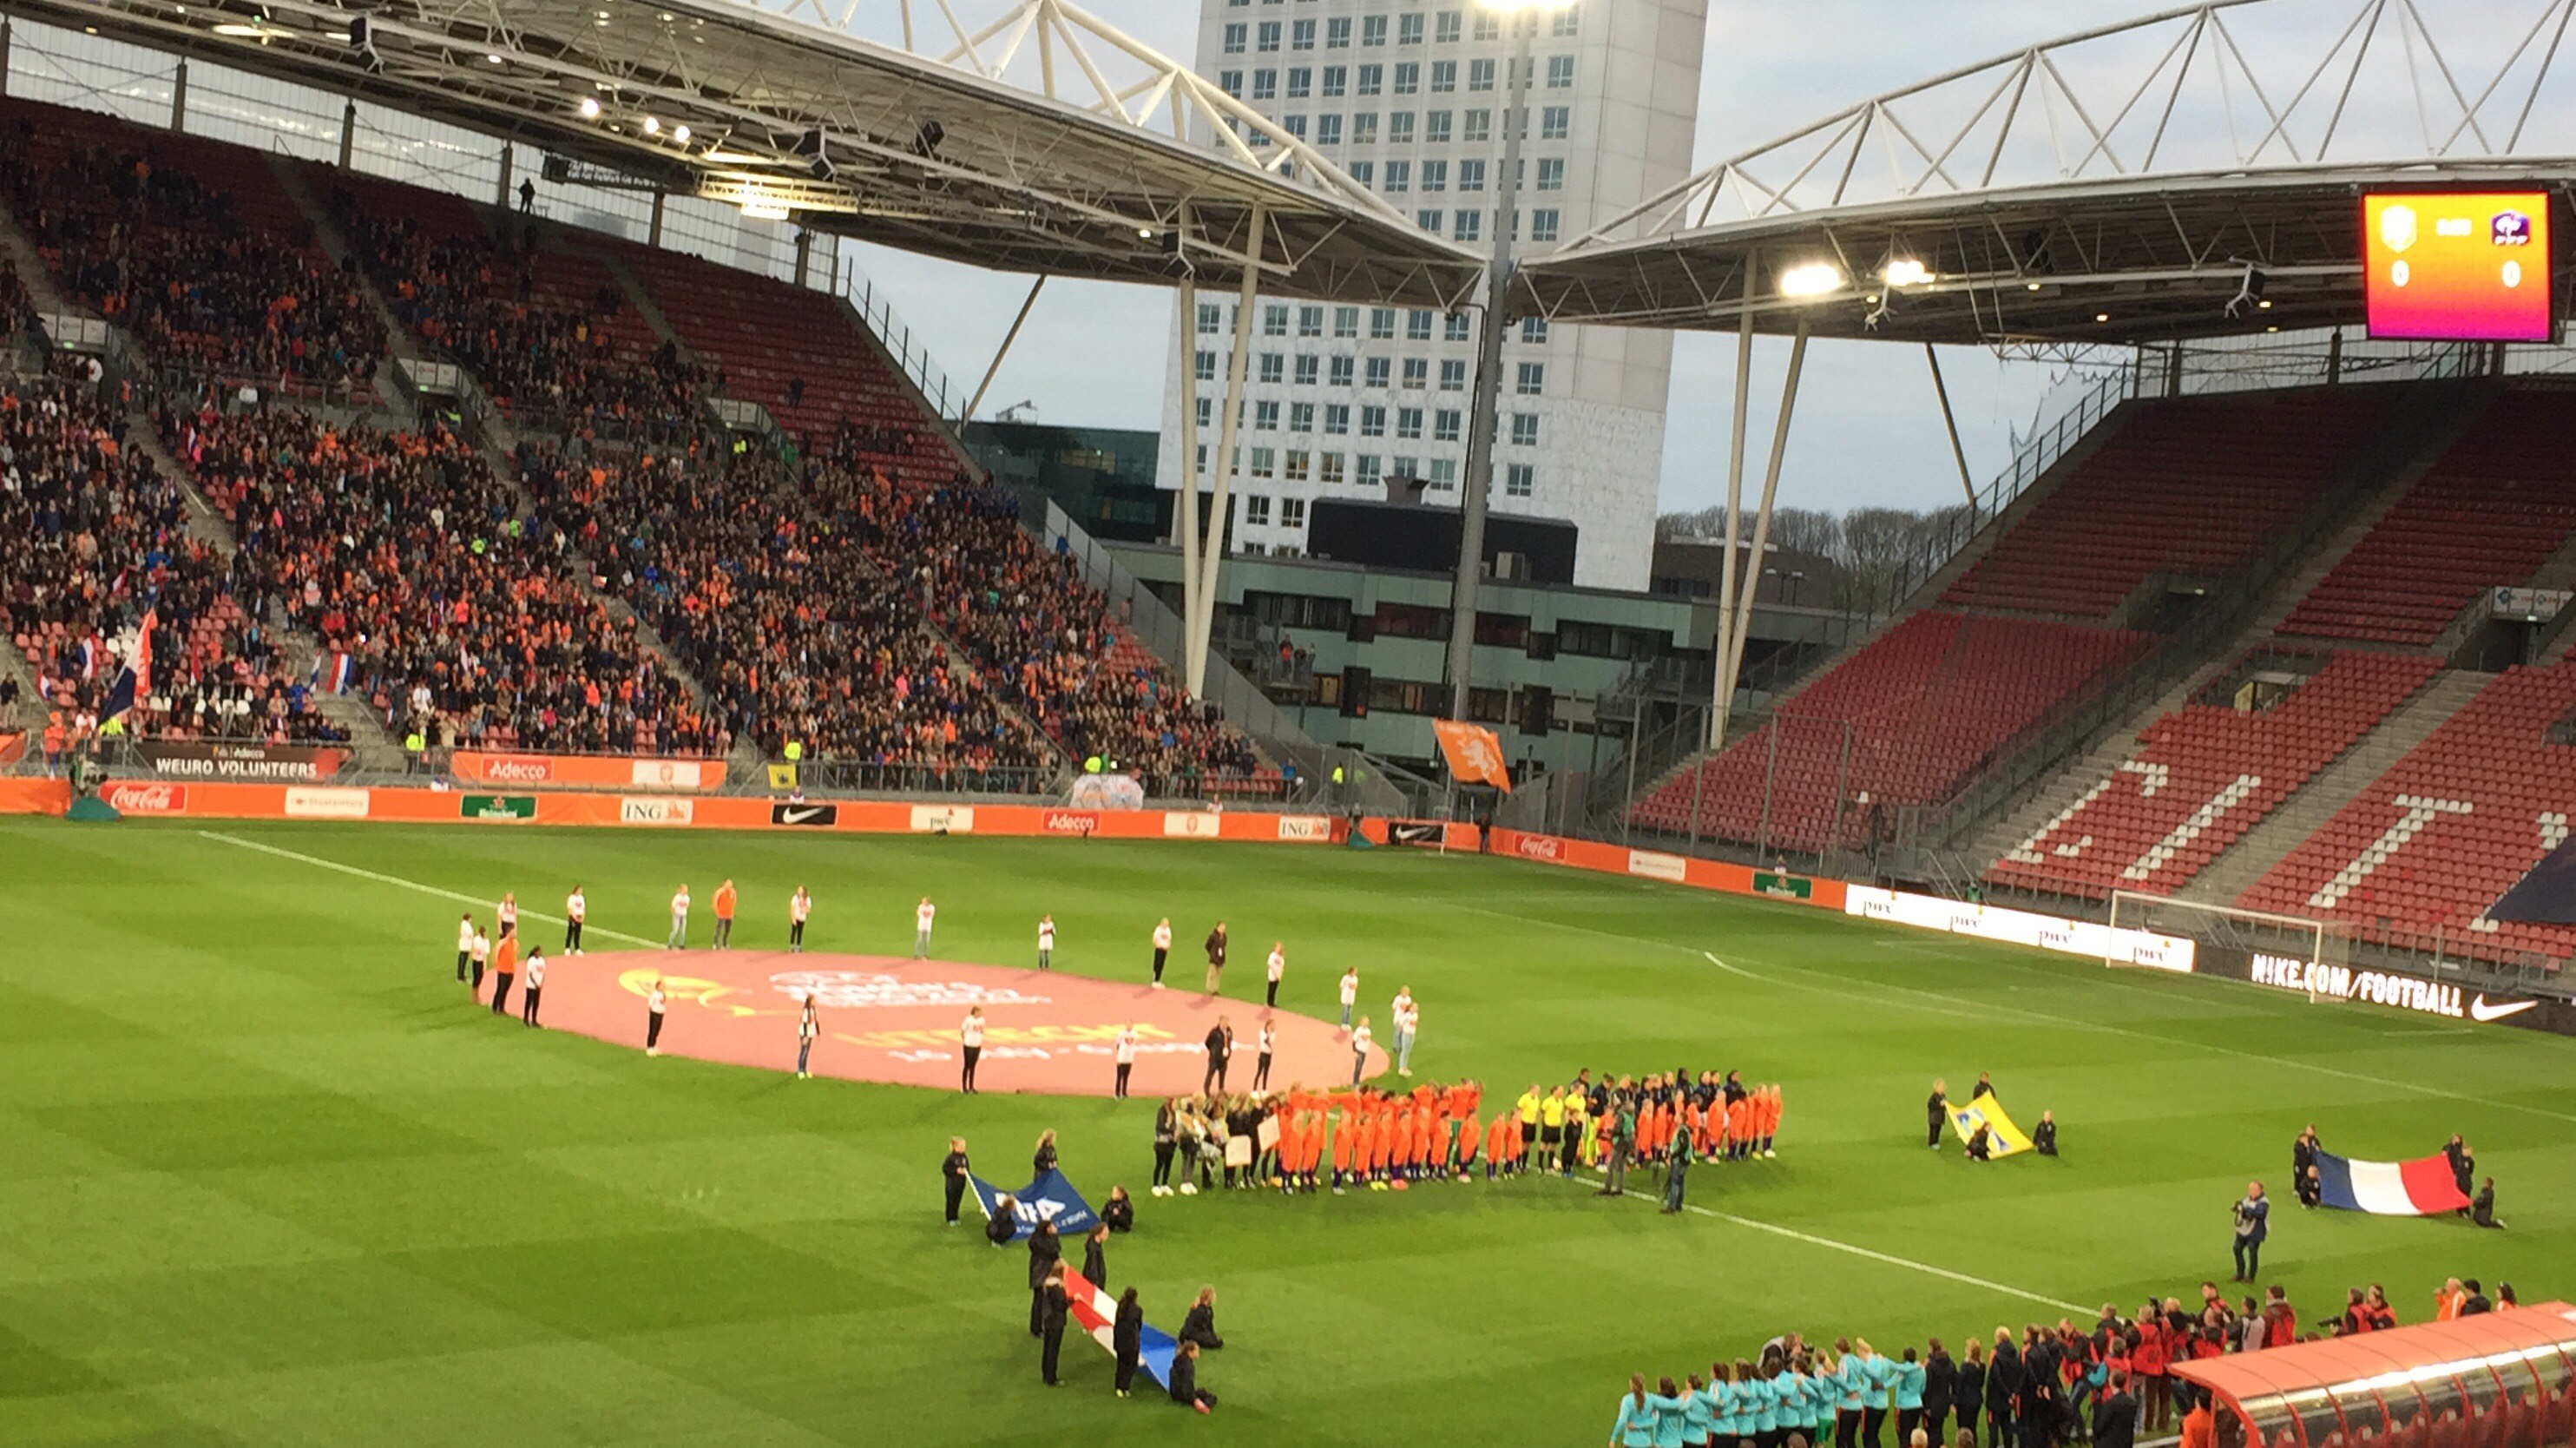 MO15-1 naar oefenwedstrijd Oranje leeuwinnen